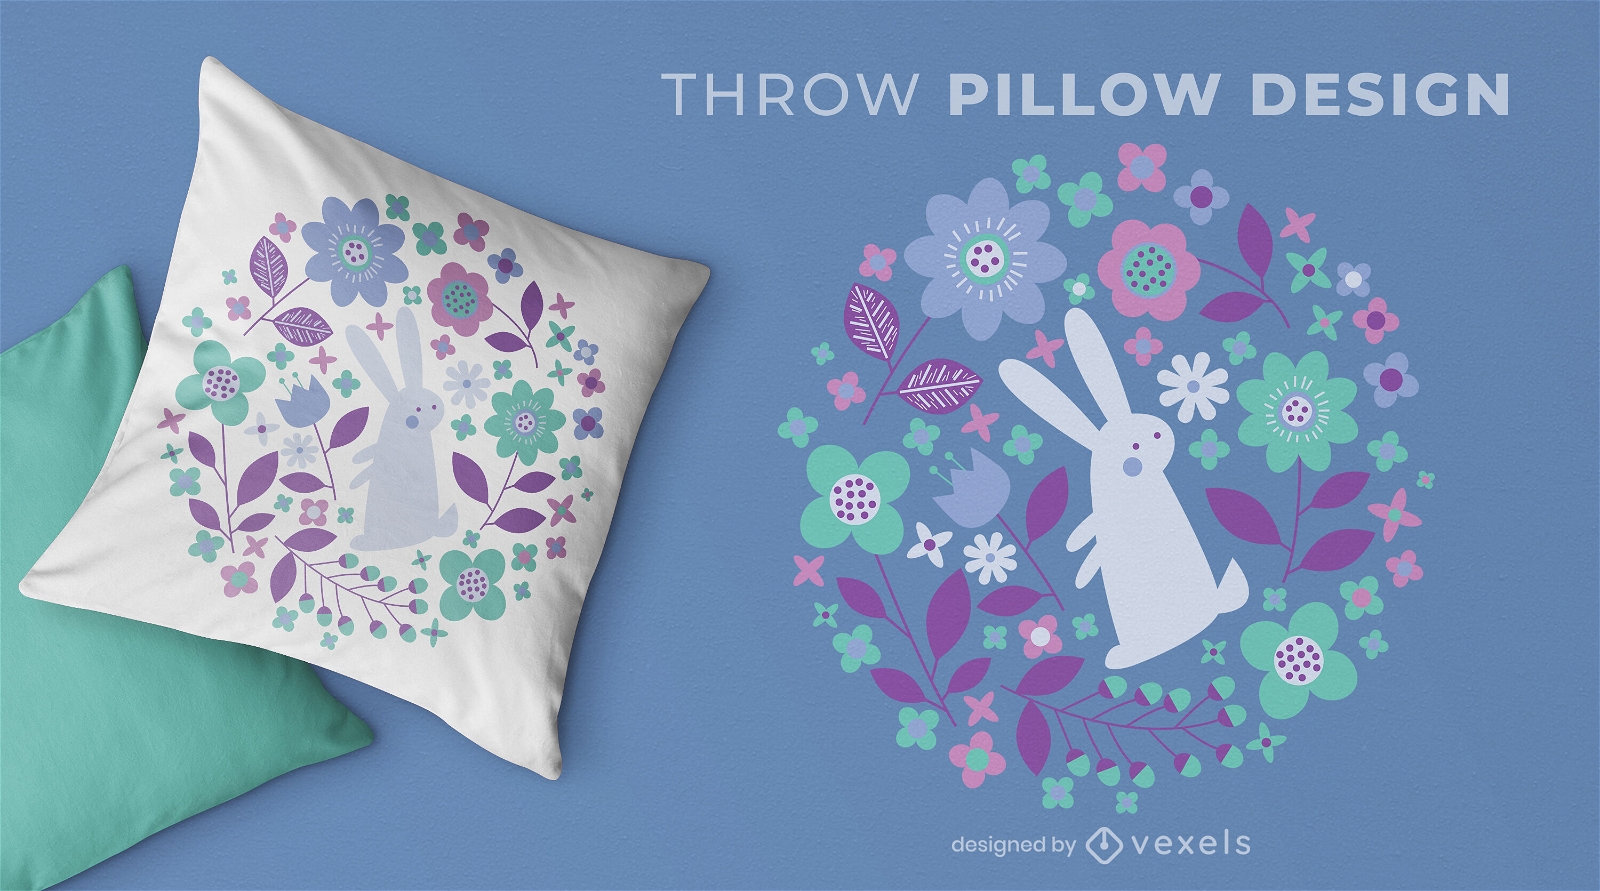 Diseño de almohada de tiro floral de conejito de pascua